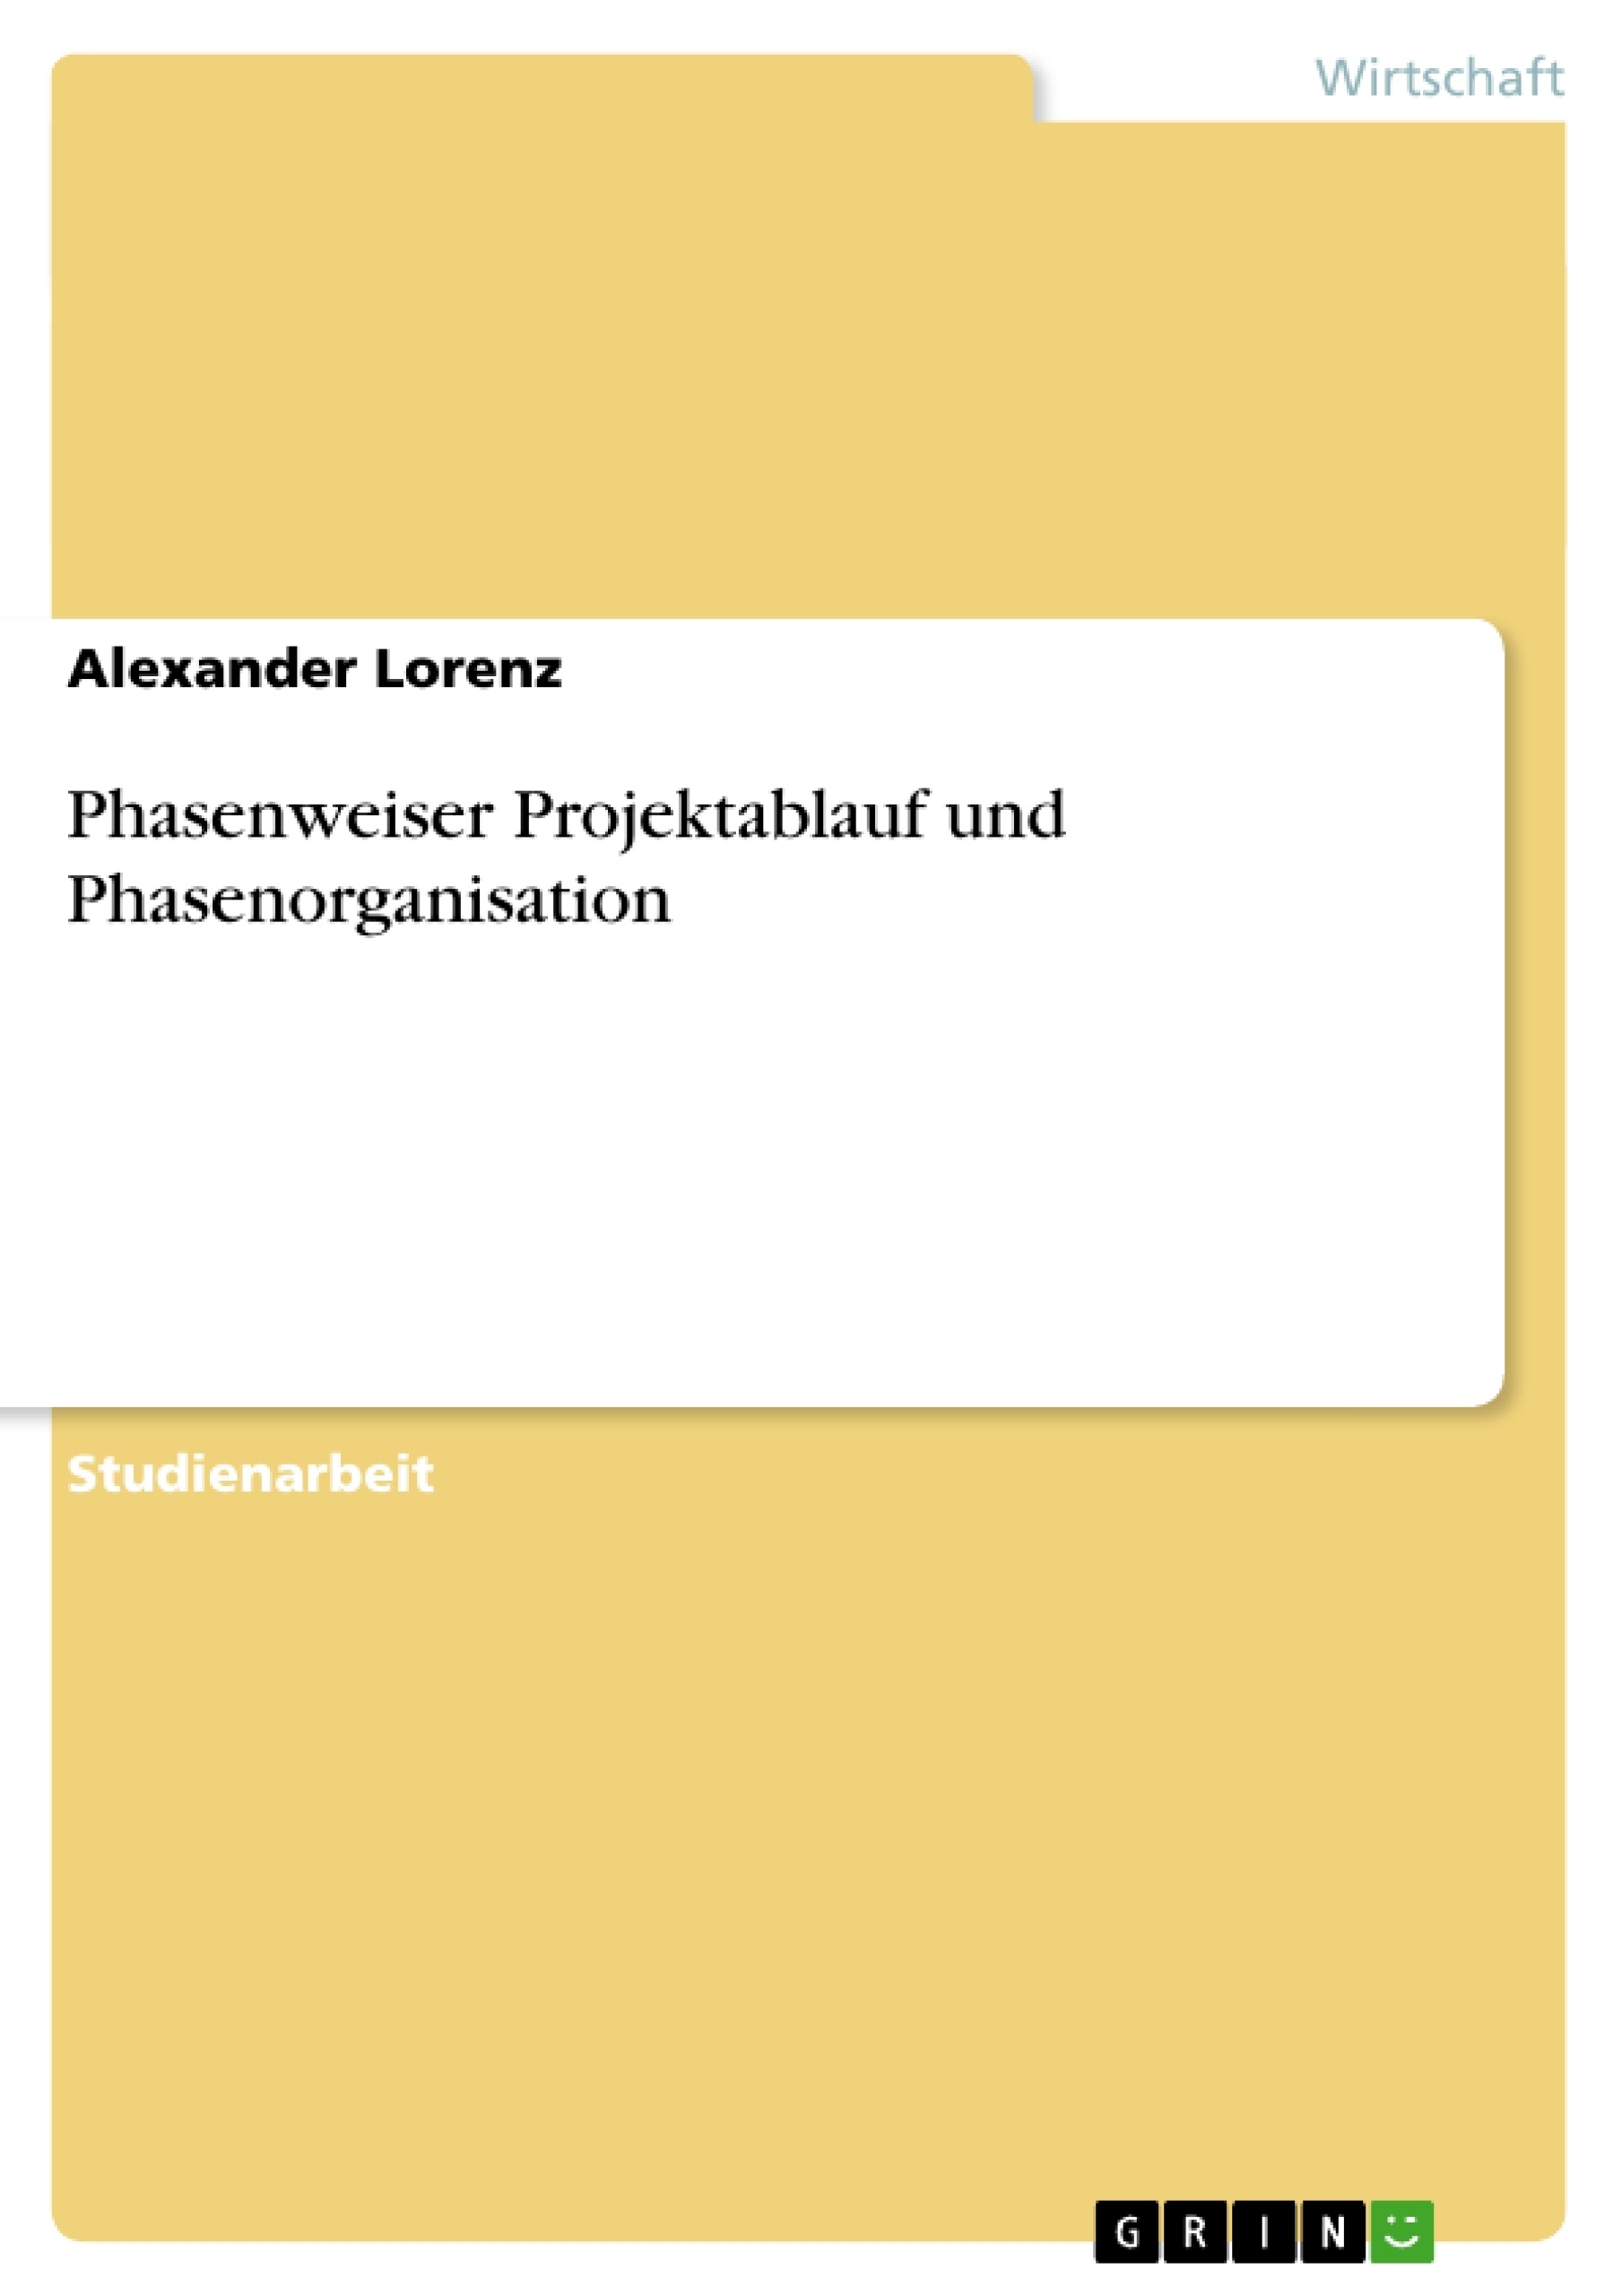 Title: Phasenweiser Projektablauf und Phasenorganisation